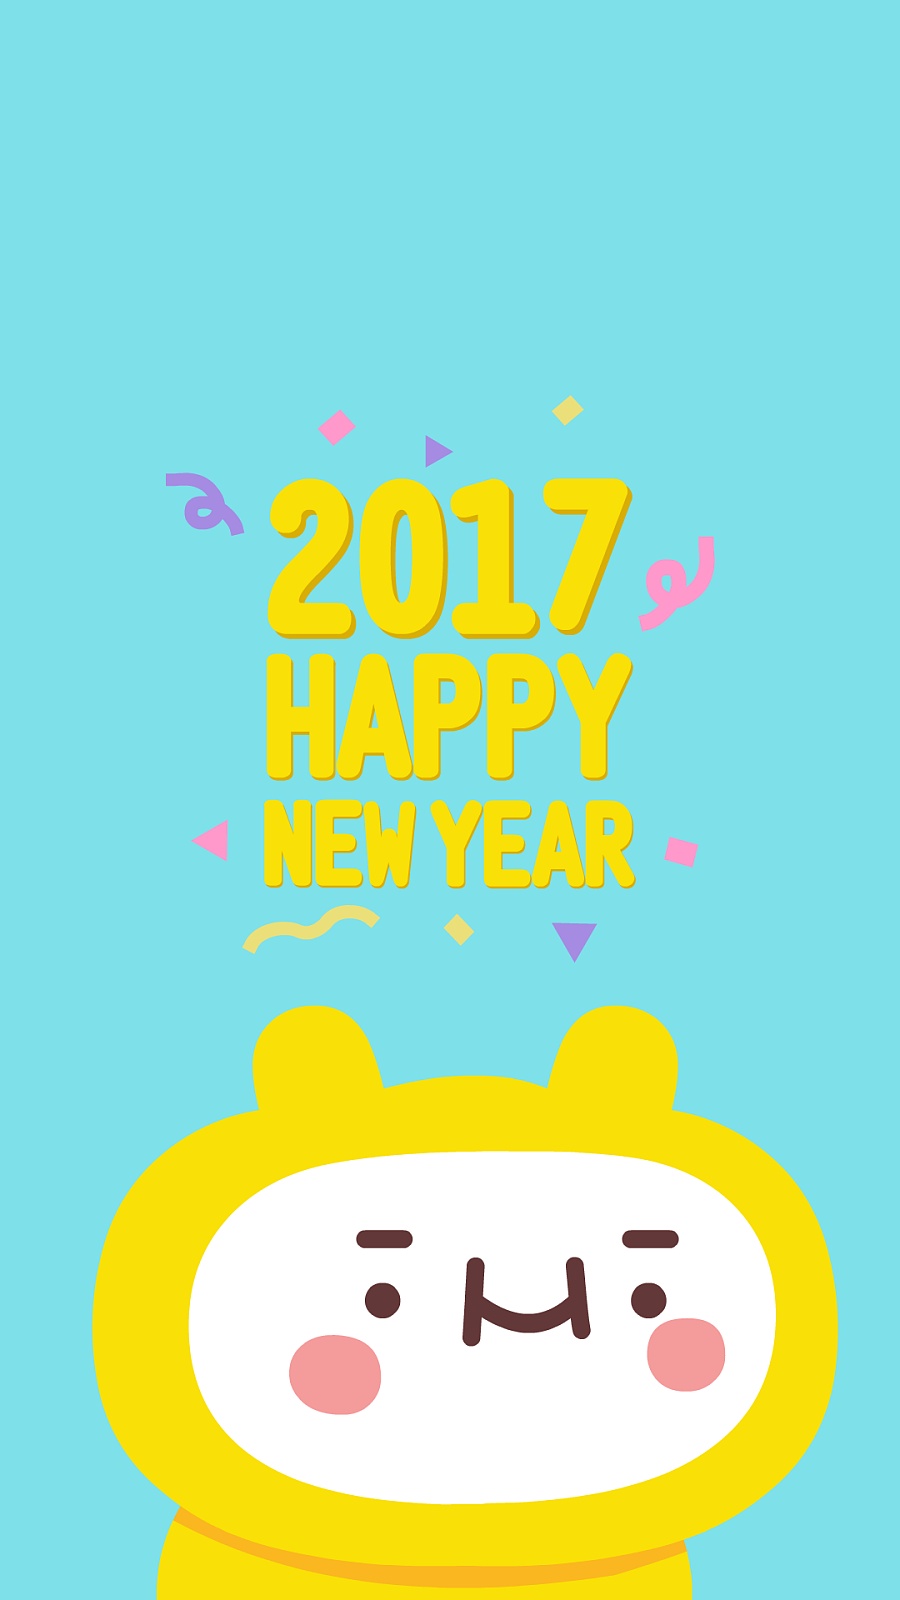 八仔2017新年快乐啊啊!|二维动画|动漫|张小纸